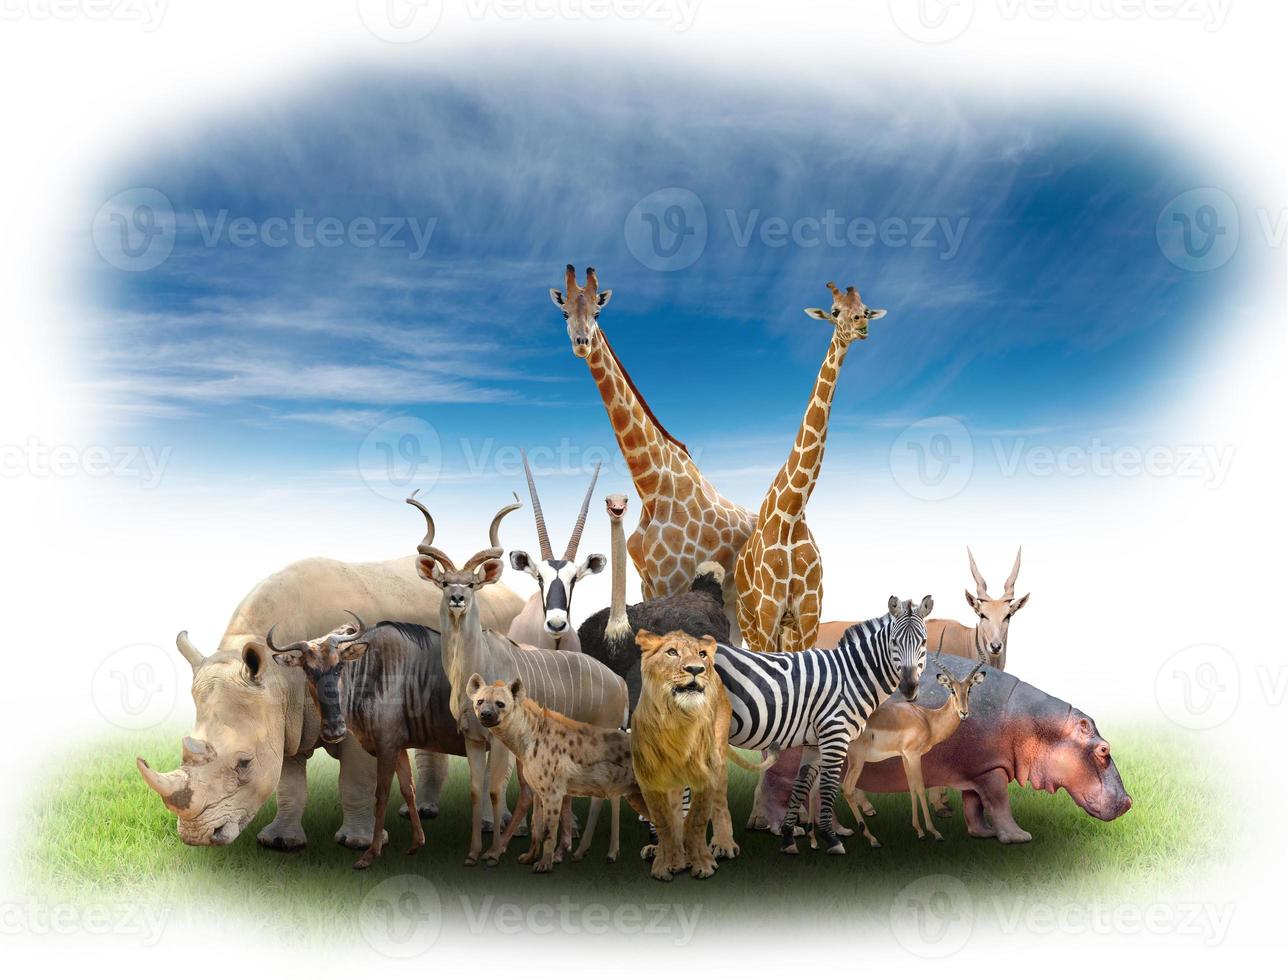 grupp av afrikanska djur foto